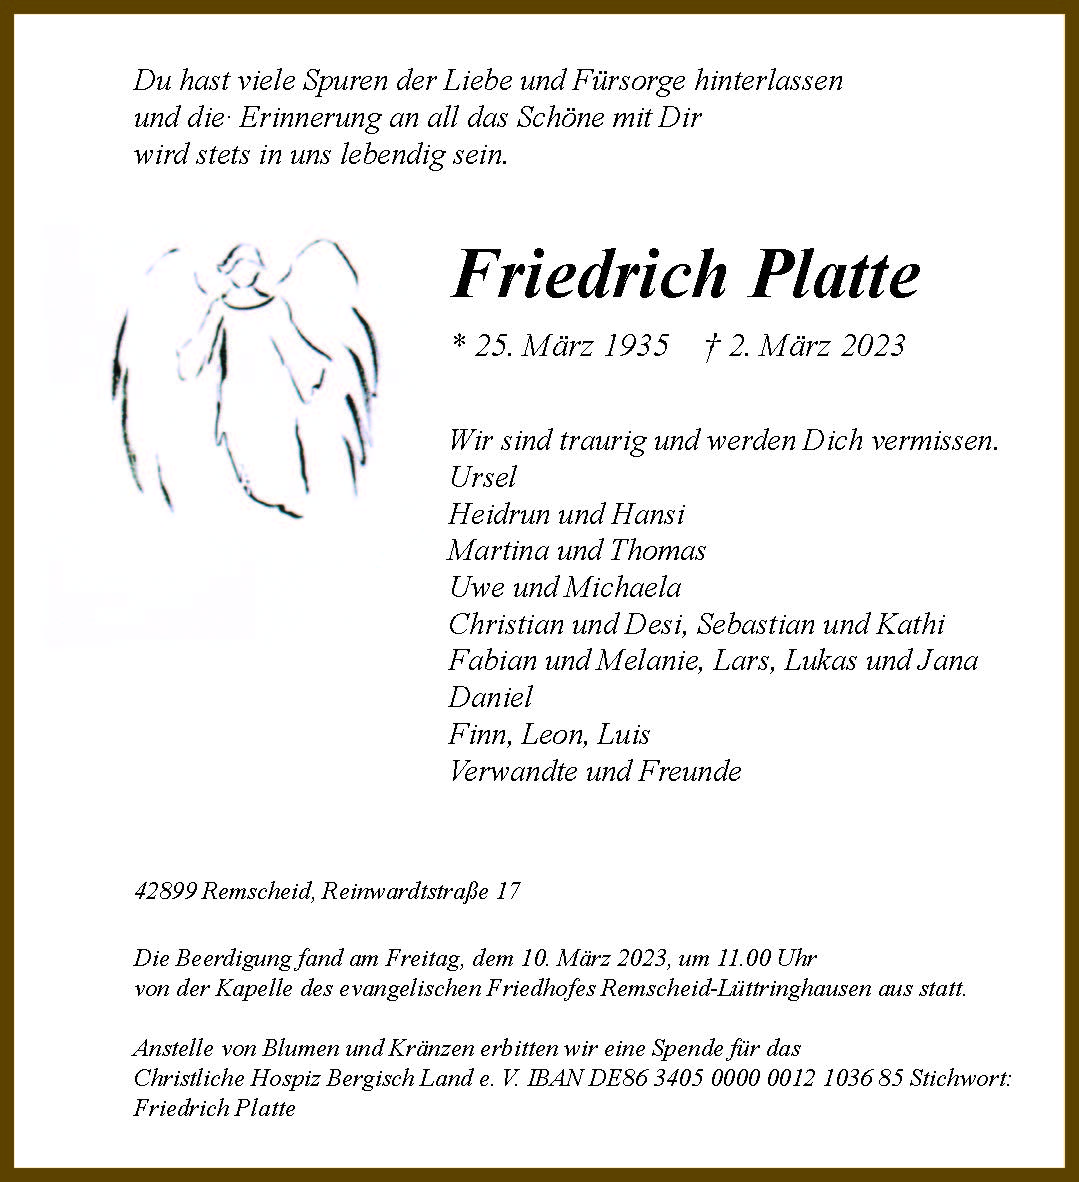 Friedrich Platte